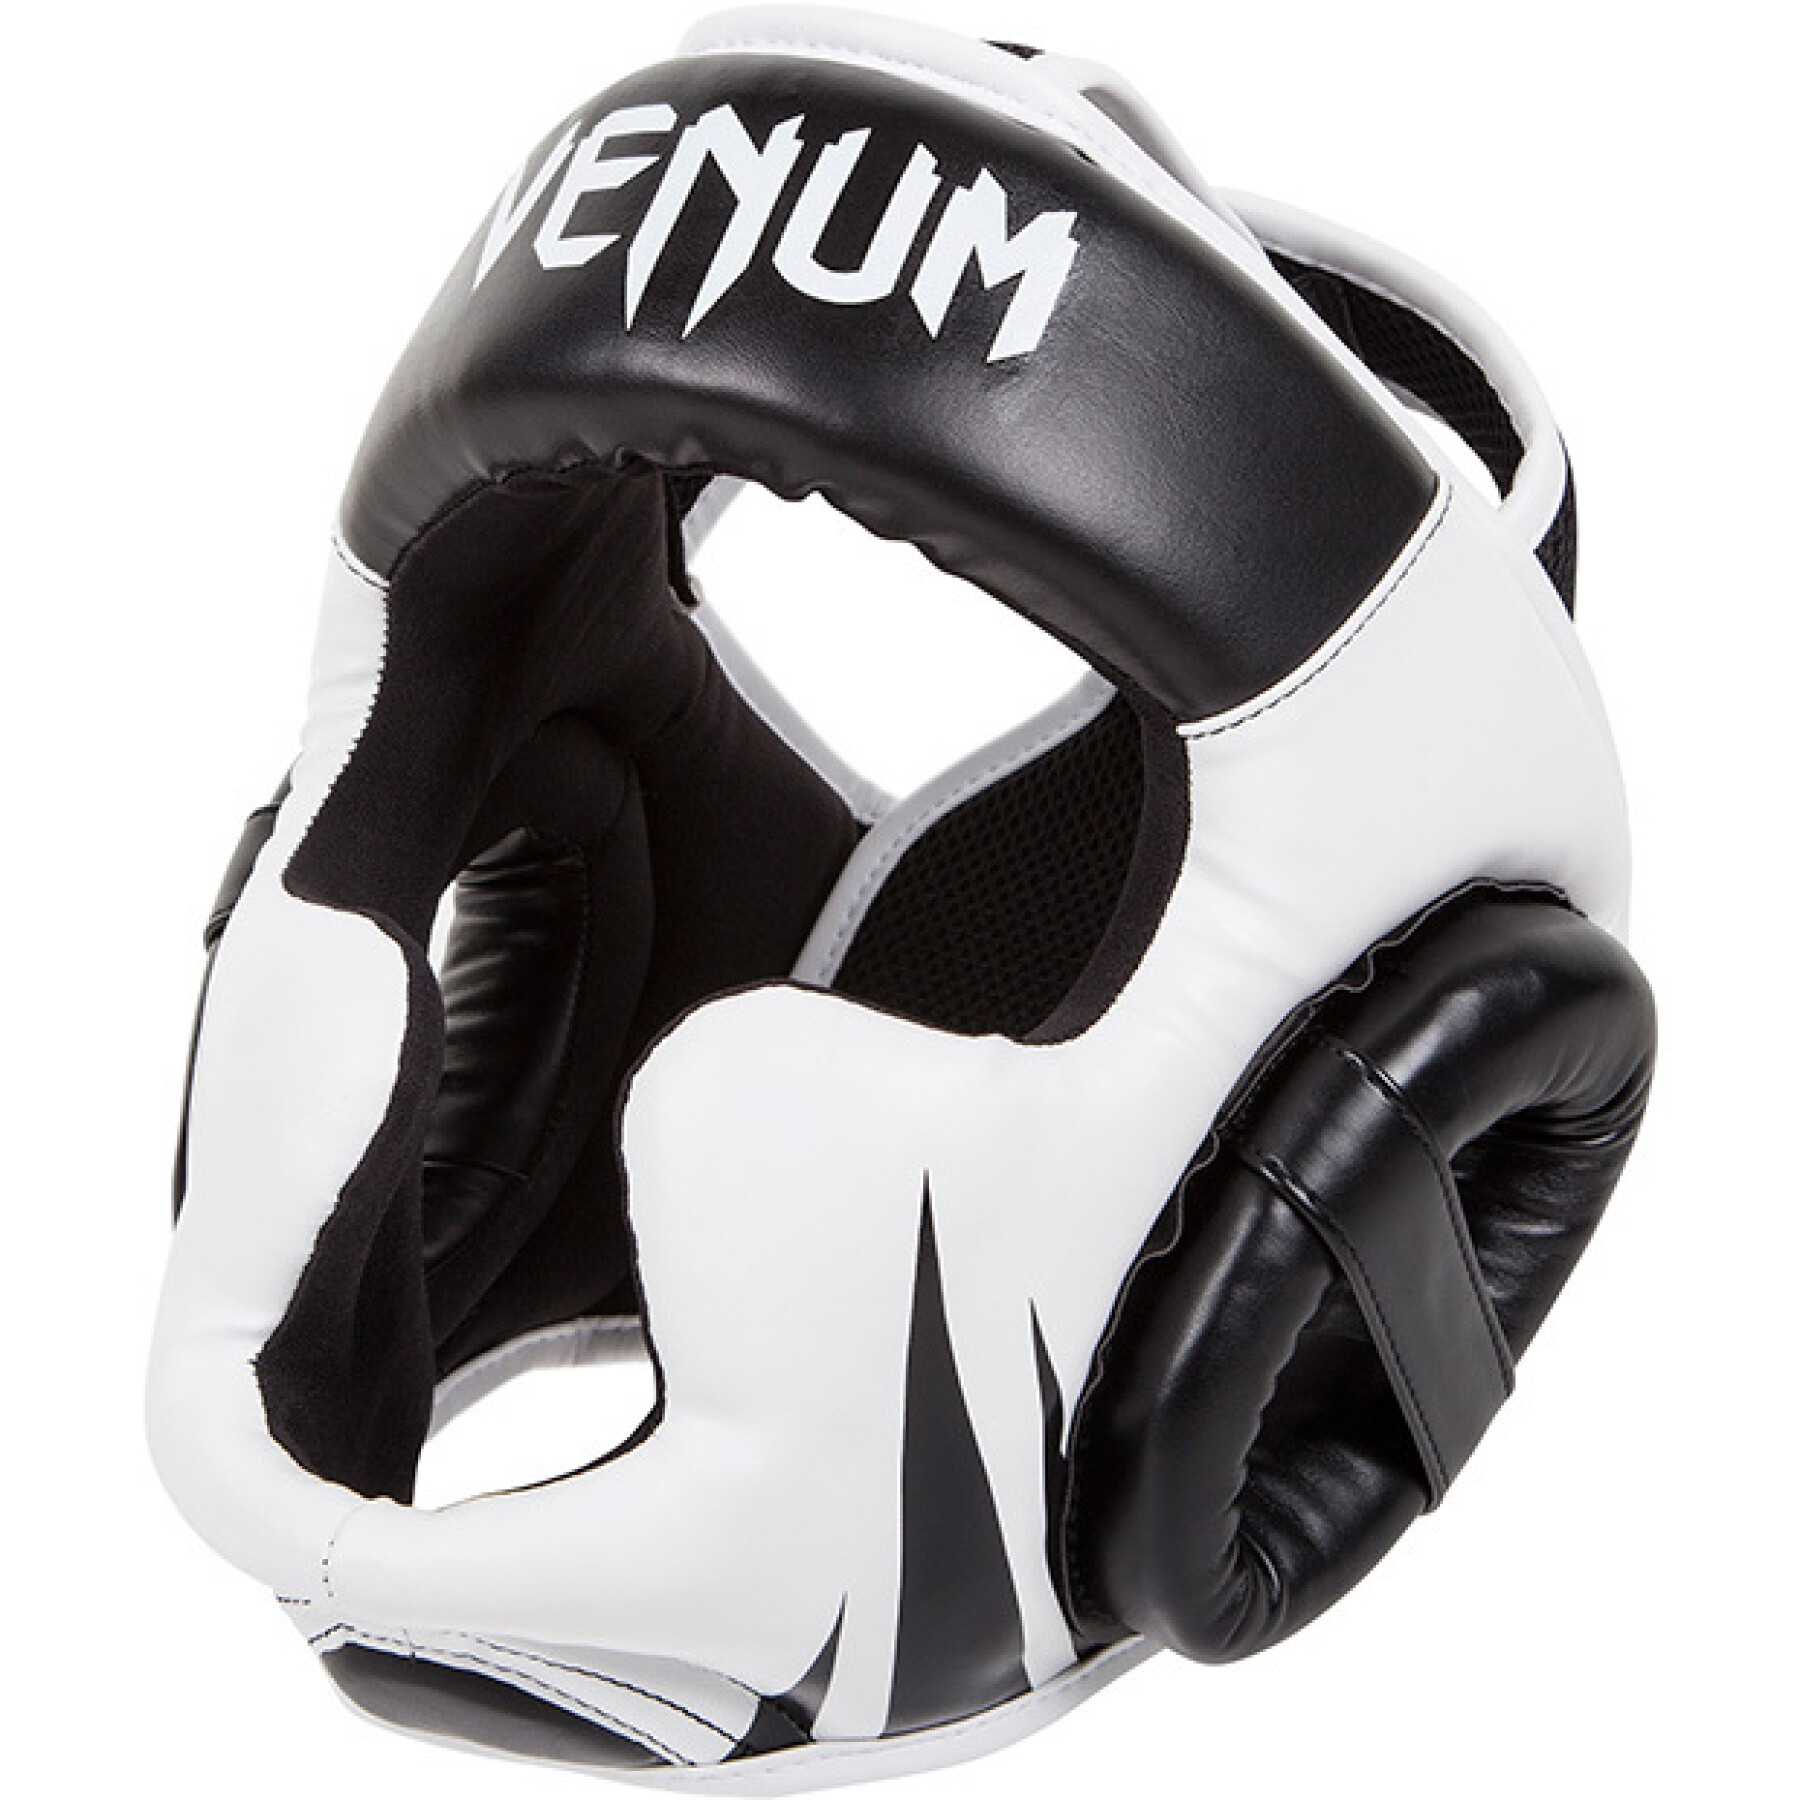 venumchallenger 2.0 boxing helmet 